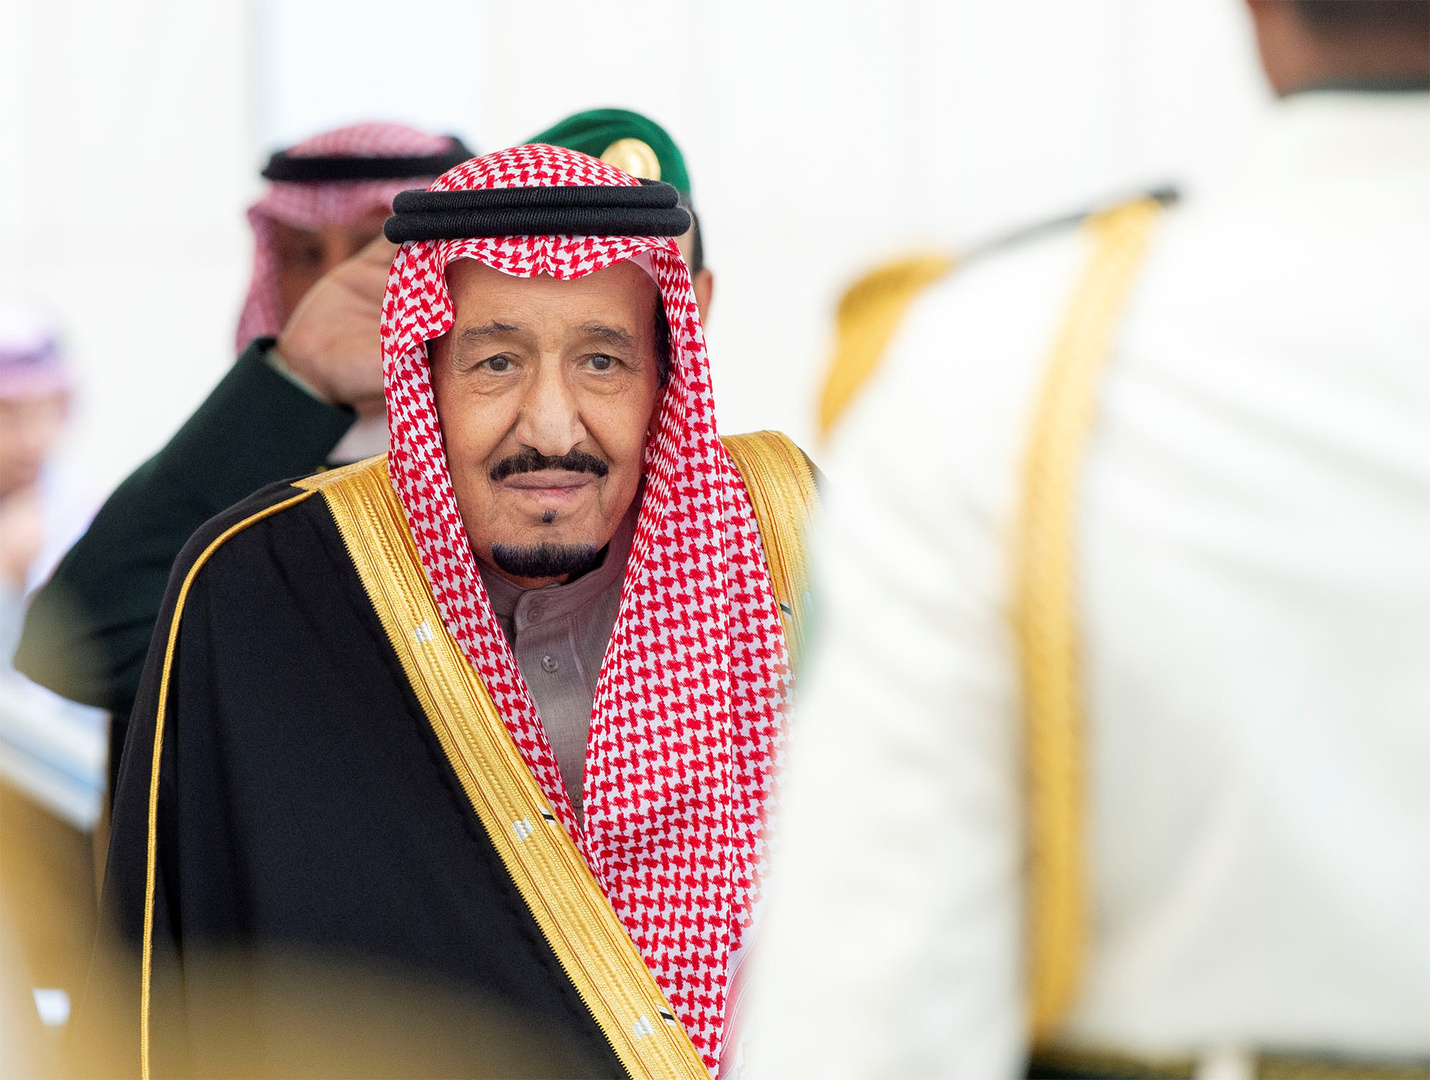 الملك سلمان يتوجه إلى سلطنة عمان ومحمد بن سلمان يتولى إدارة شؤون المملكة